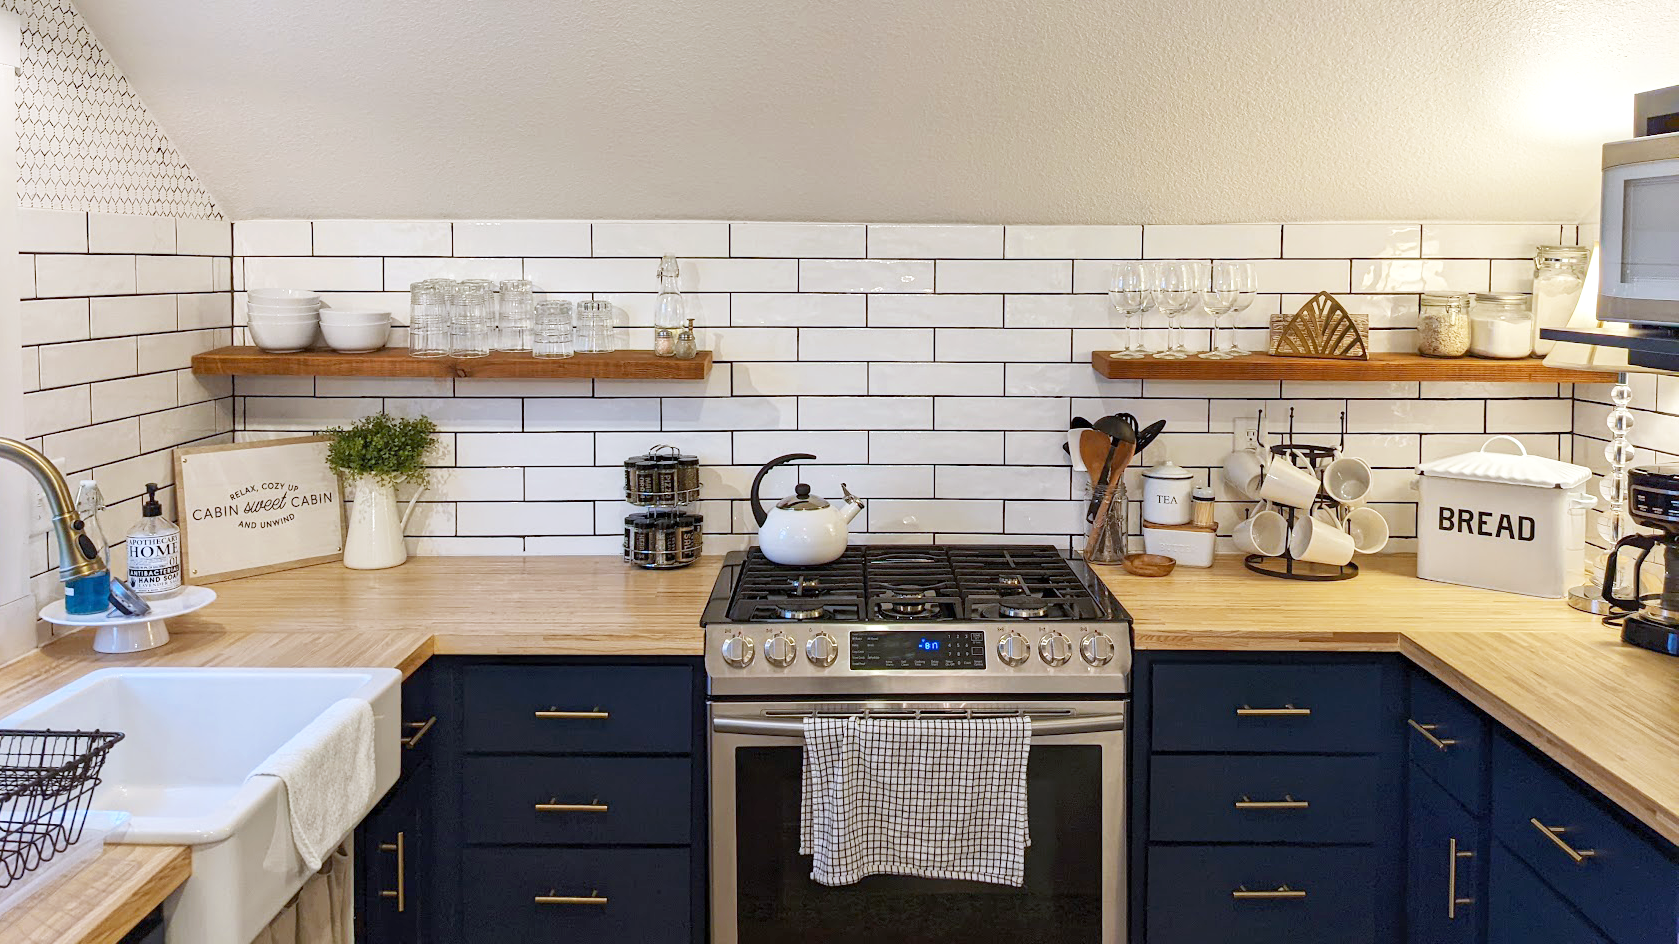 Airbnb Shopping List – Kitchen Essentials